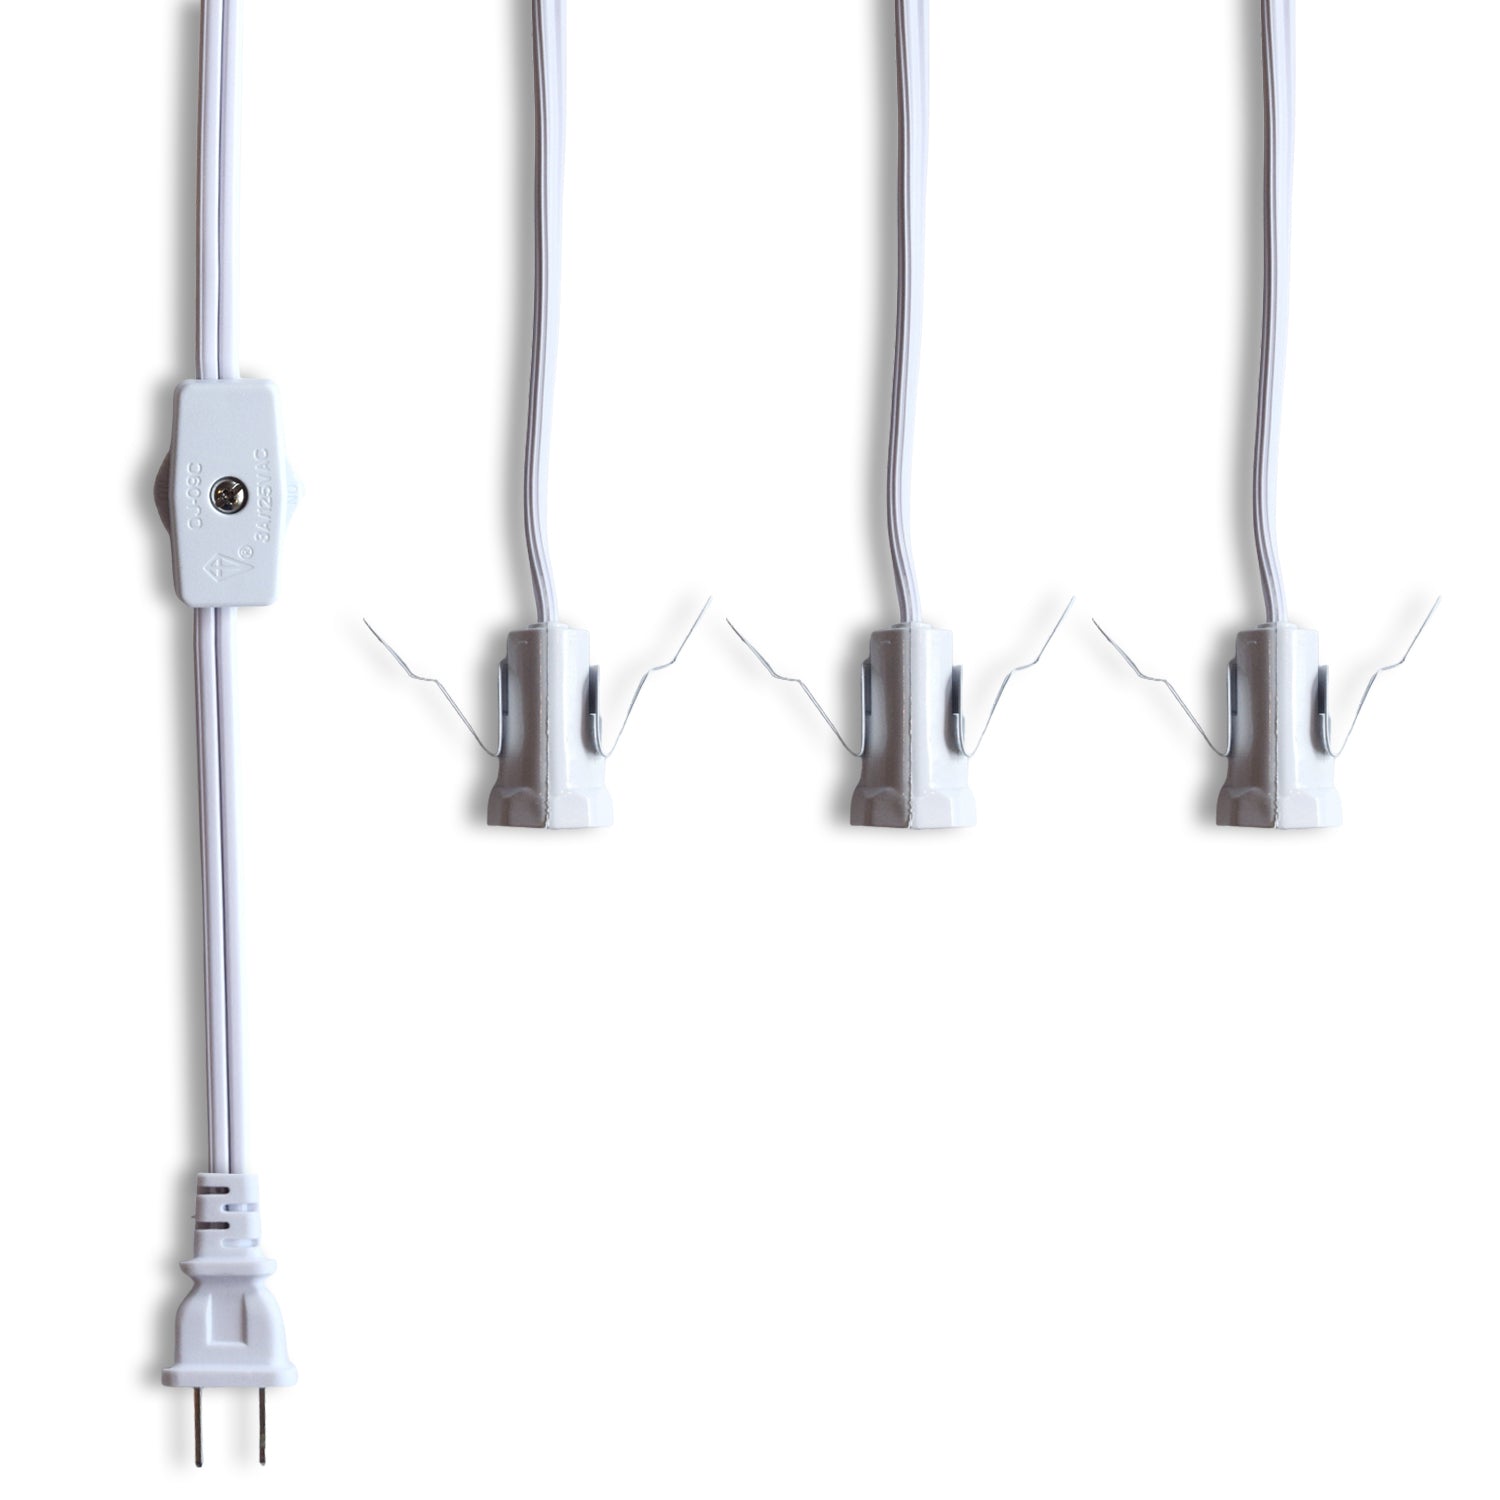 Star Lantern Triple Socket White Pendant Light Lamp Cord, Switch, 19 Ft - Electrical Swag Light Kit